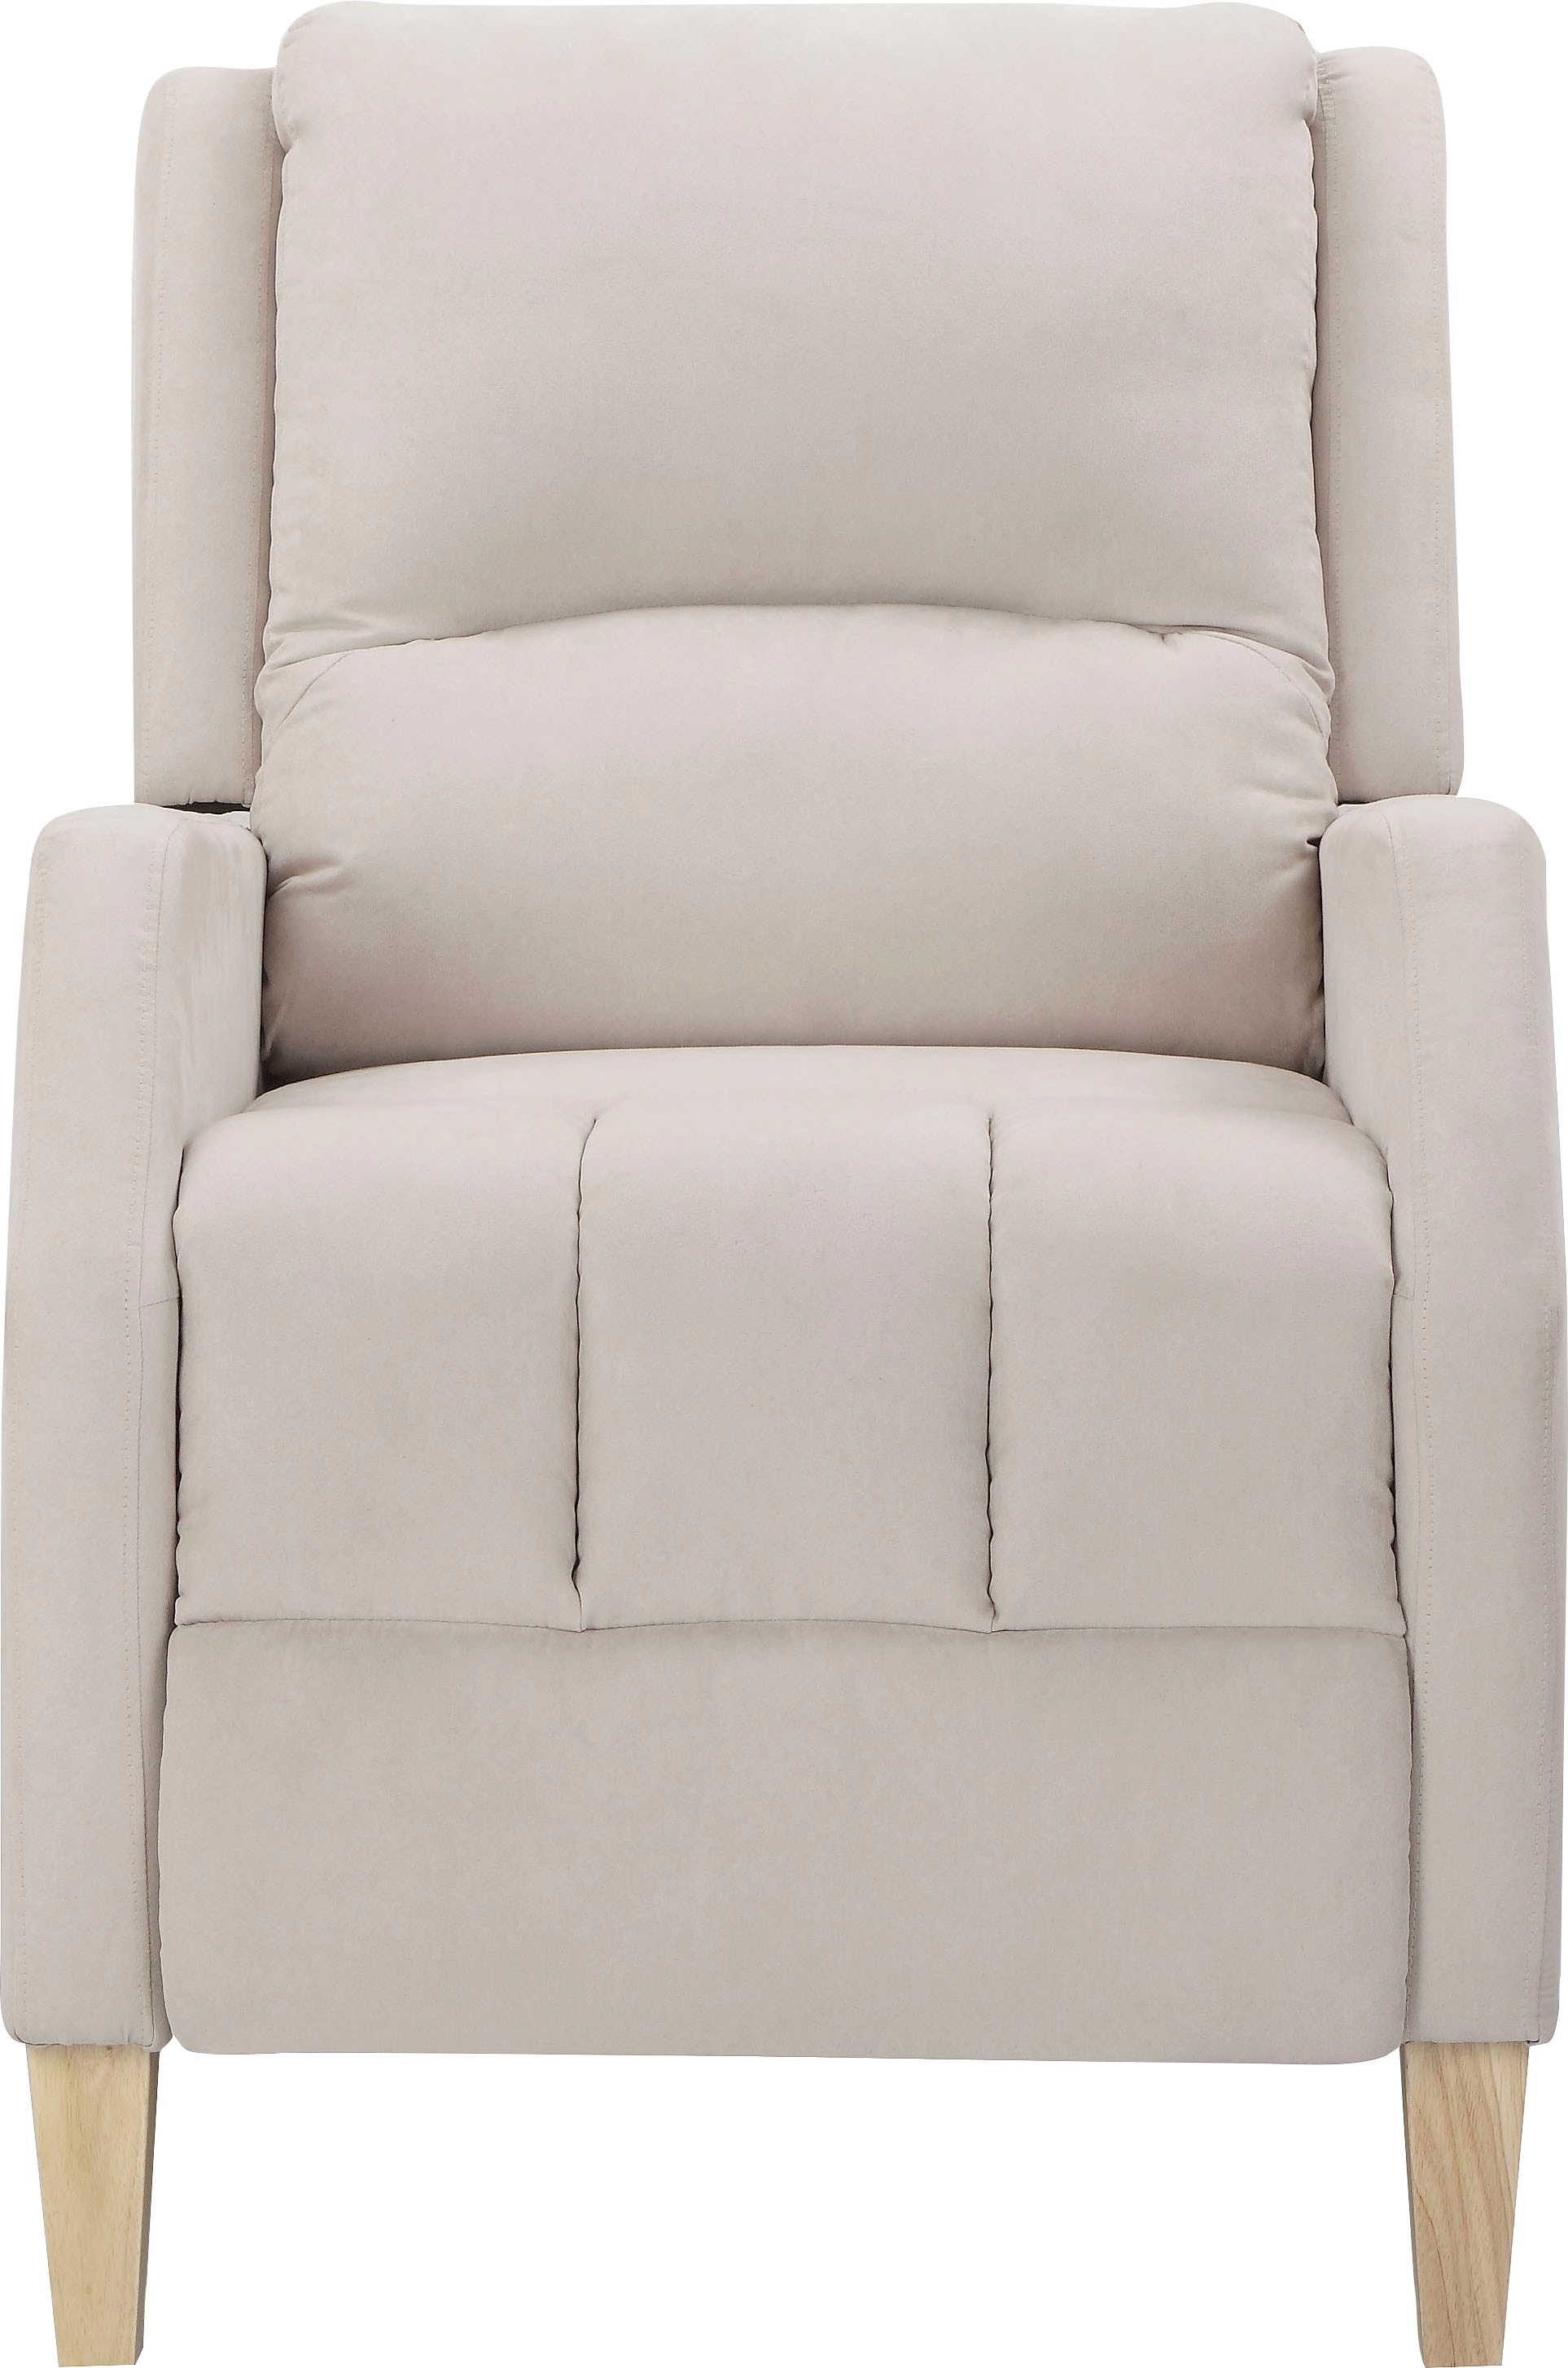 Home affaire Relaxsessel »Tholey«, (1 St.), Relaxsessel mit Verstellung,  Sitz und Rücken gepolstert, Sitzhöhe 51cm bei OTTO